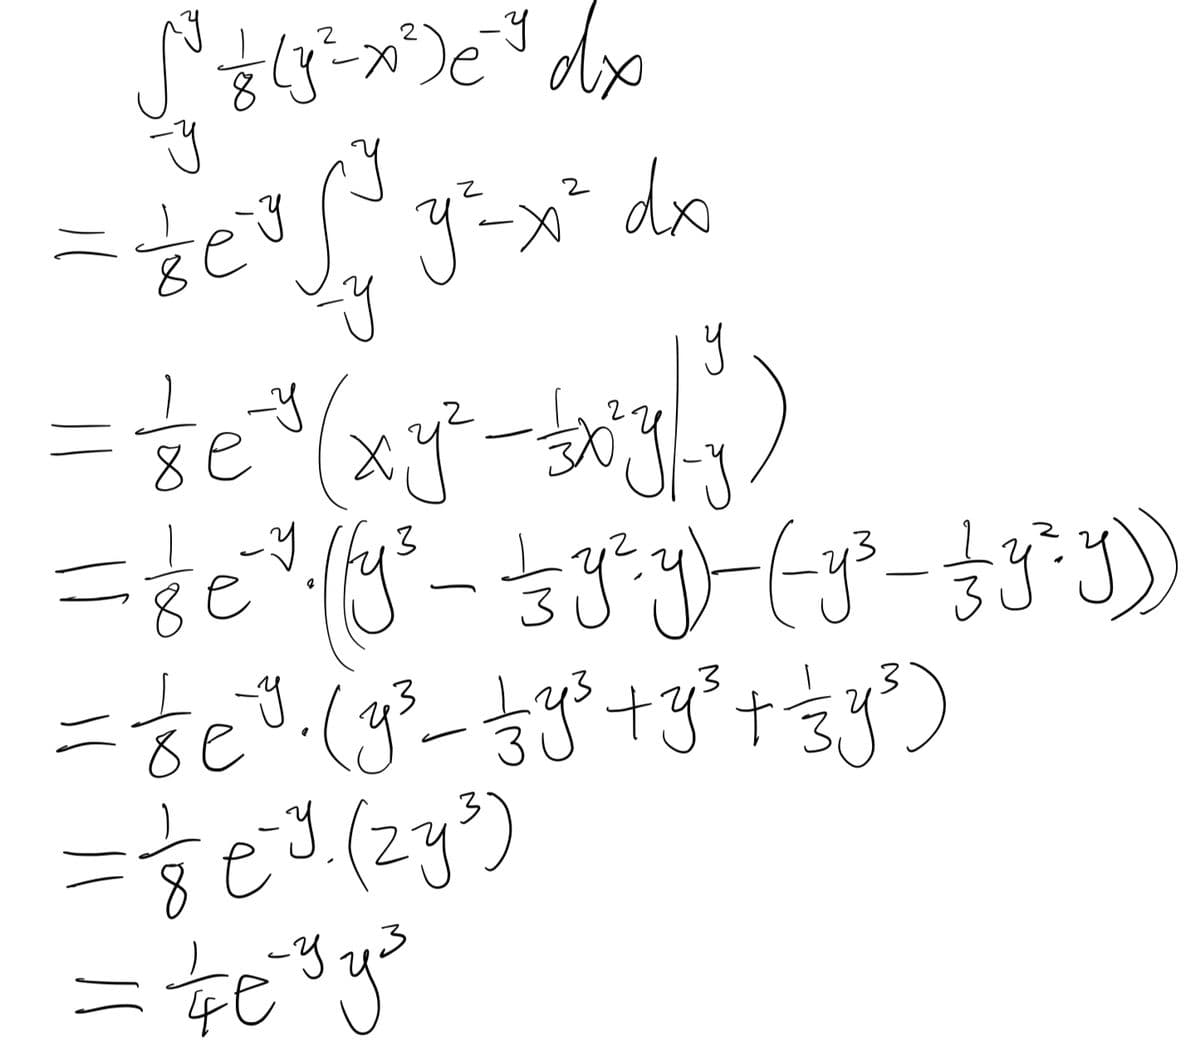 √³ — ( y = x²) e³ ³ d x
=
У
8
二記
e
-Y
do
y²=x²
У
= ge²* ((y² - ≤3³y) (y² - 3y²-y))
=&e³·(g³- £3³ +3² + ≤3³)
-y
= √18 e²³. (zy³)
ニキビ
3
iy³